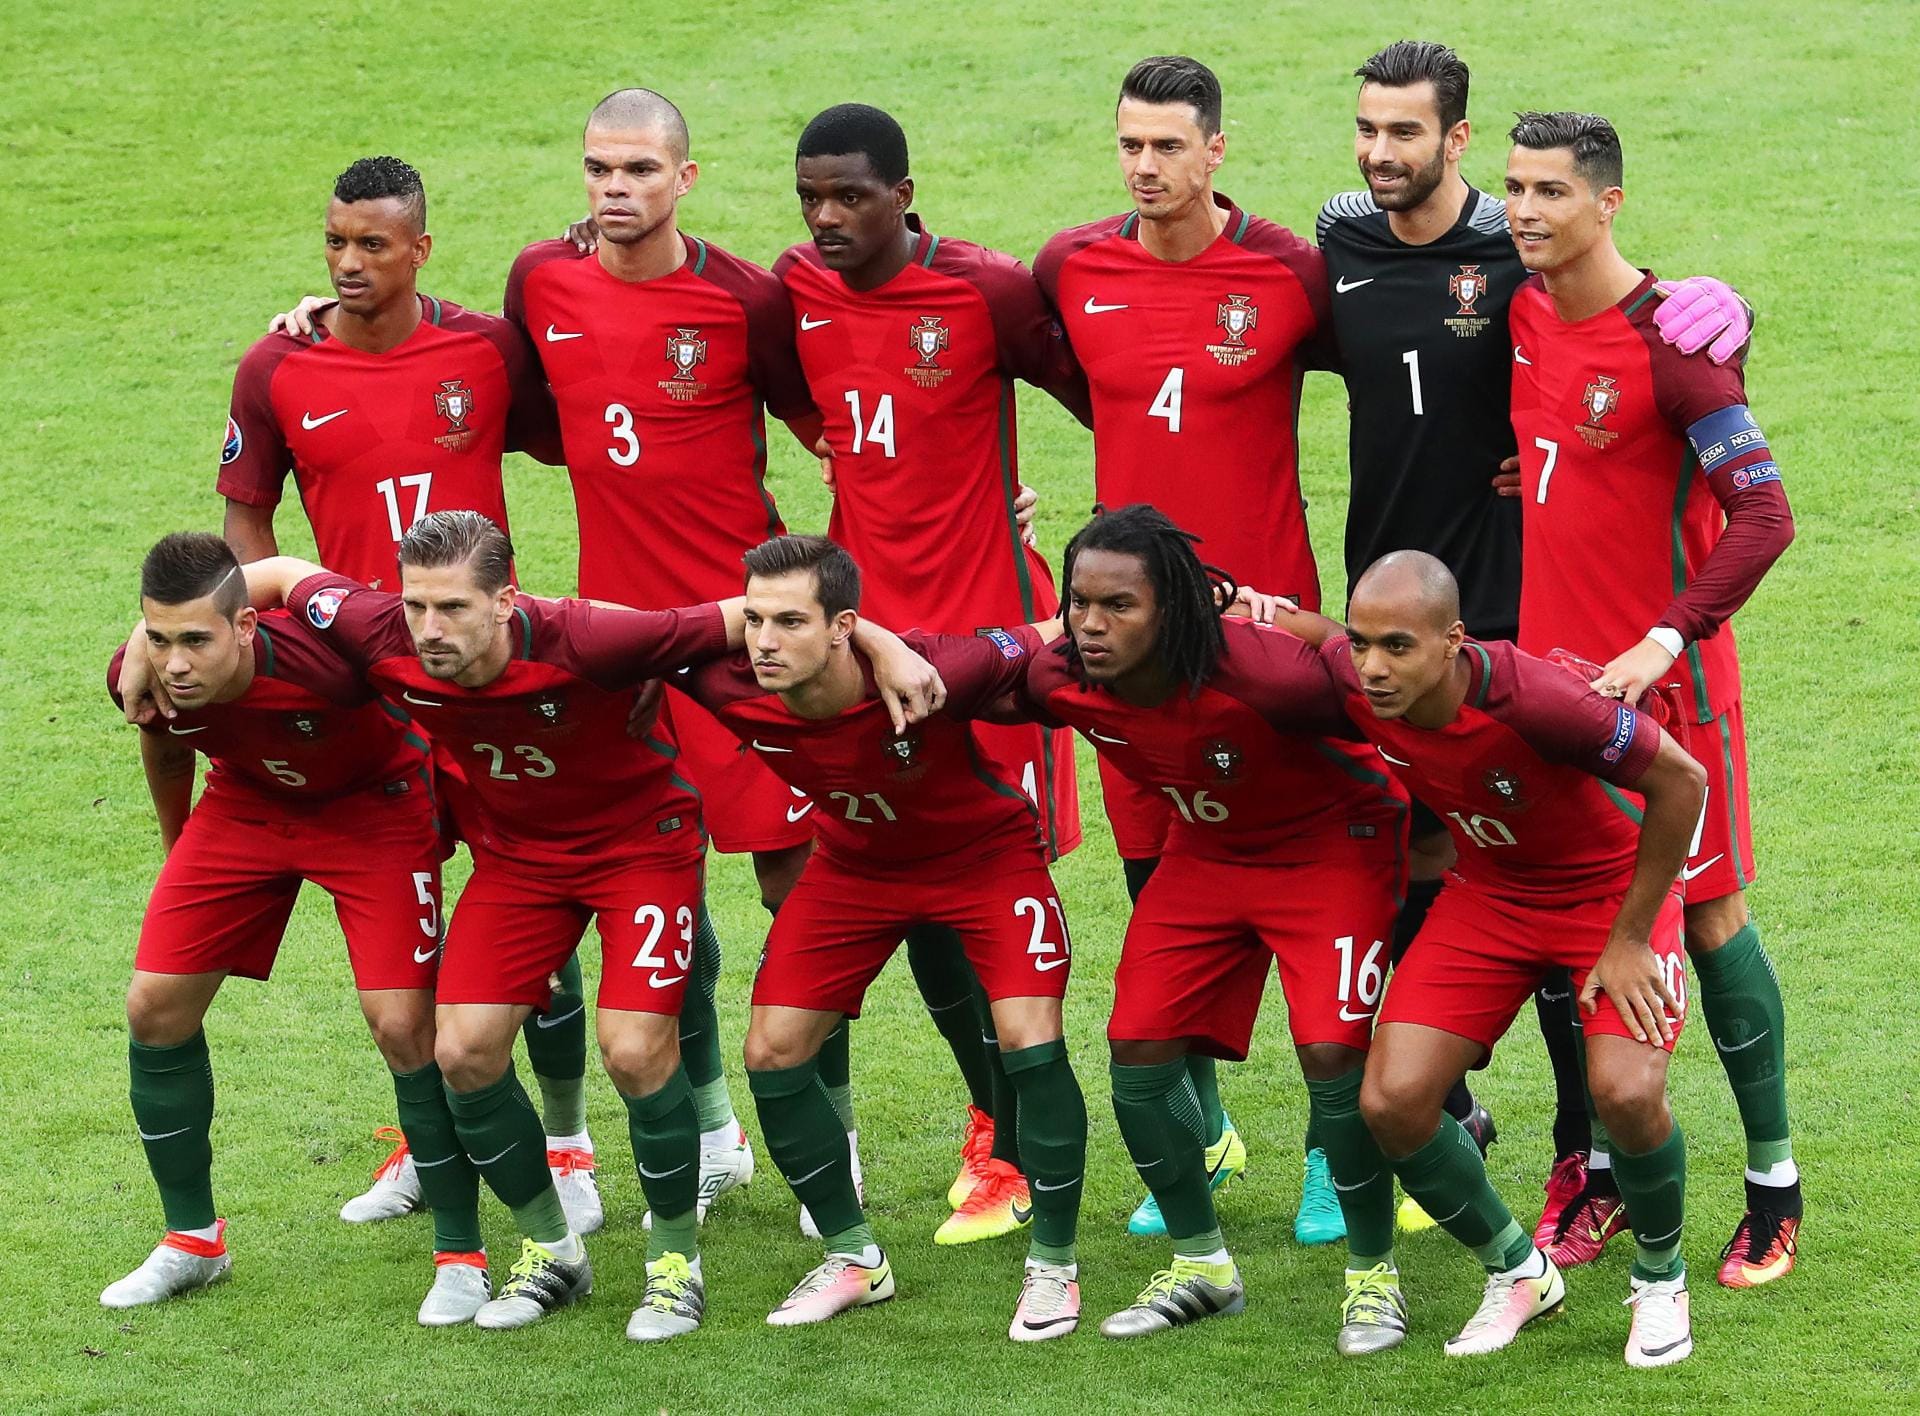 Portugal stand letztmals 2004 im EM-Finale, damals verloren die Iberer im eigenen Land gegen Griechenland. Jetzt soll die Krönung für Cristiano Ronaldo folgen.